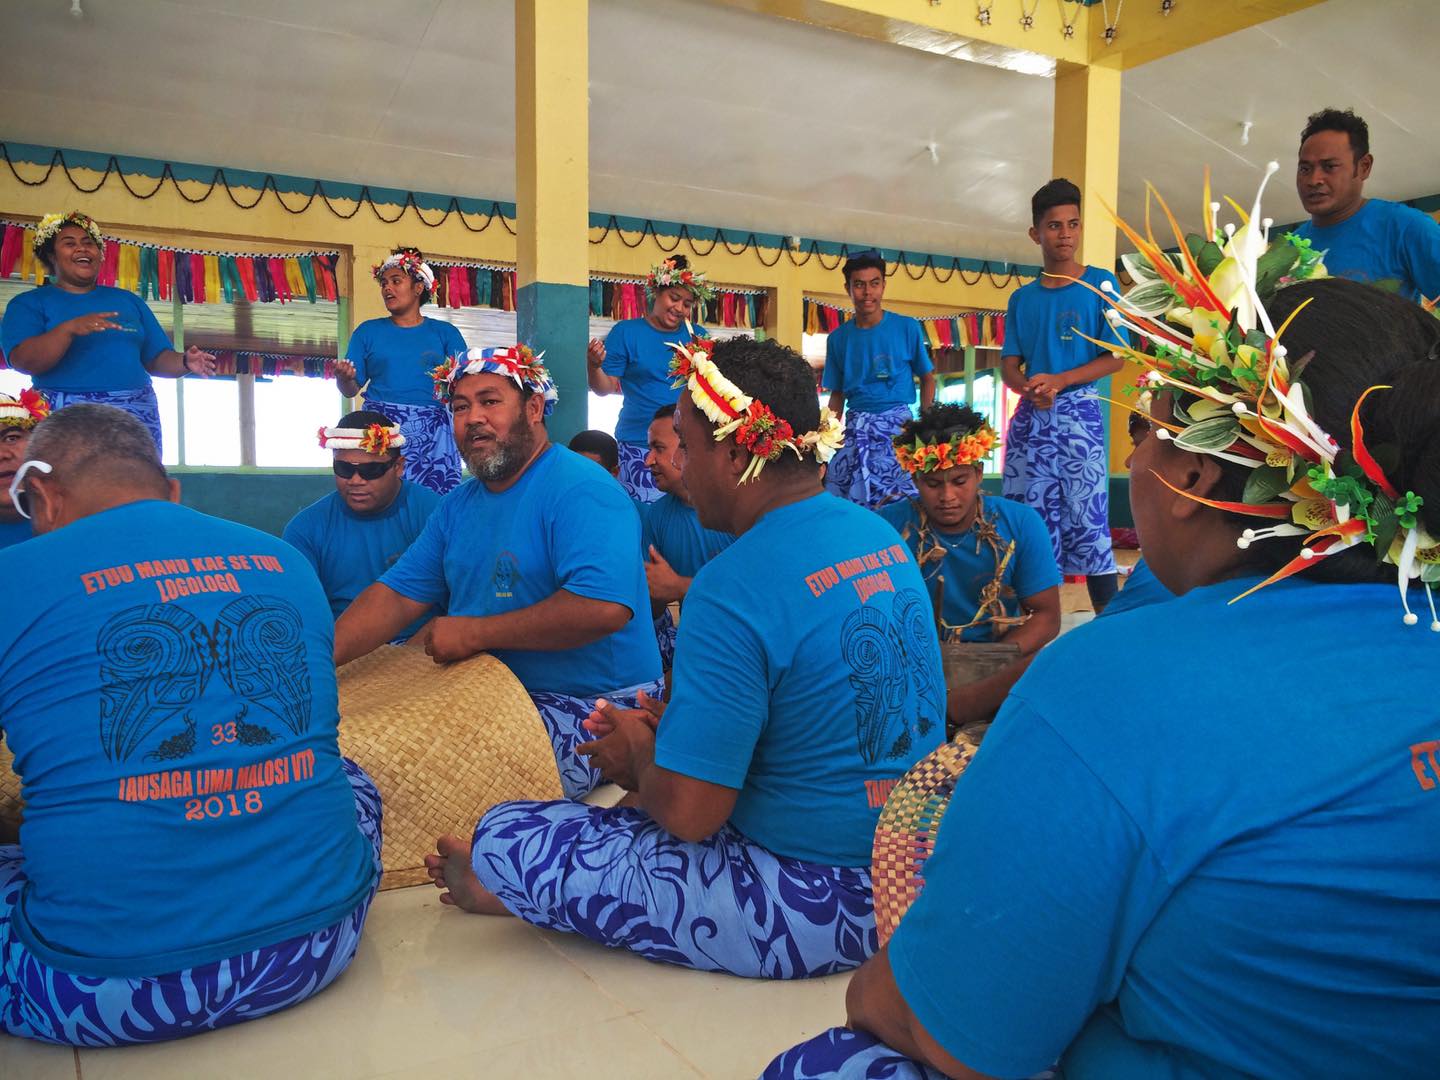 tuvalu people performing fatele in funafuti